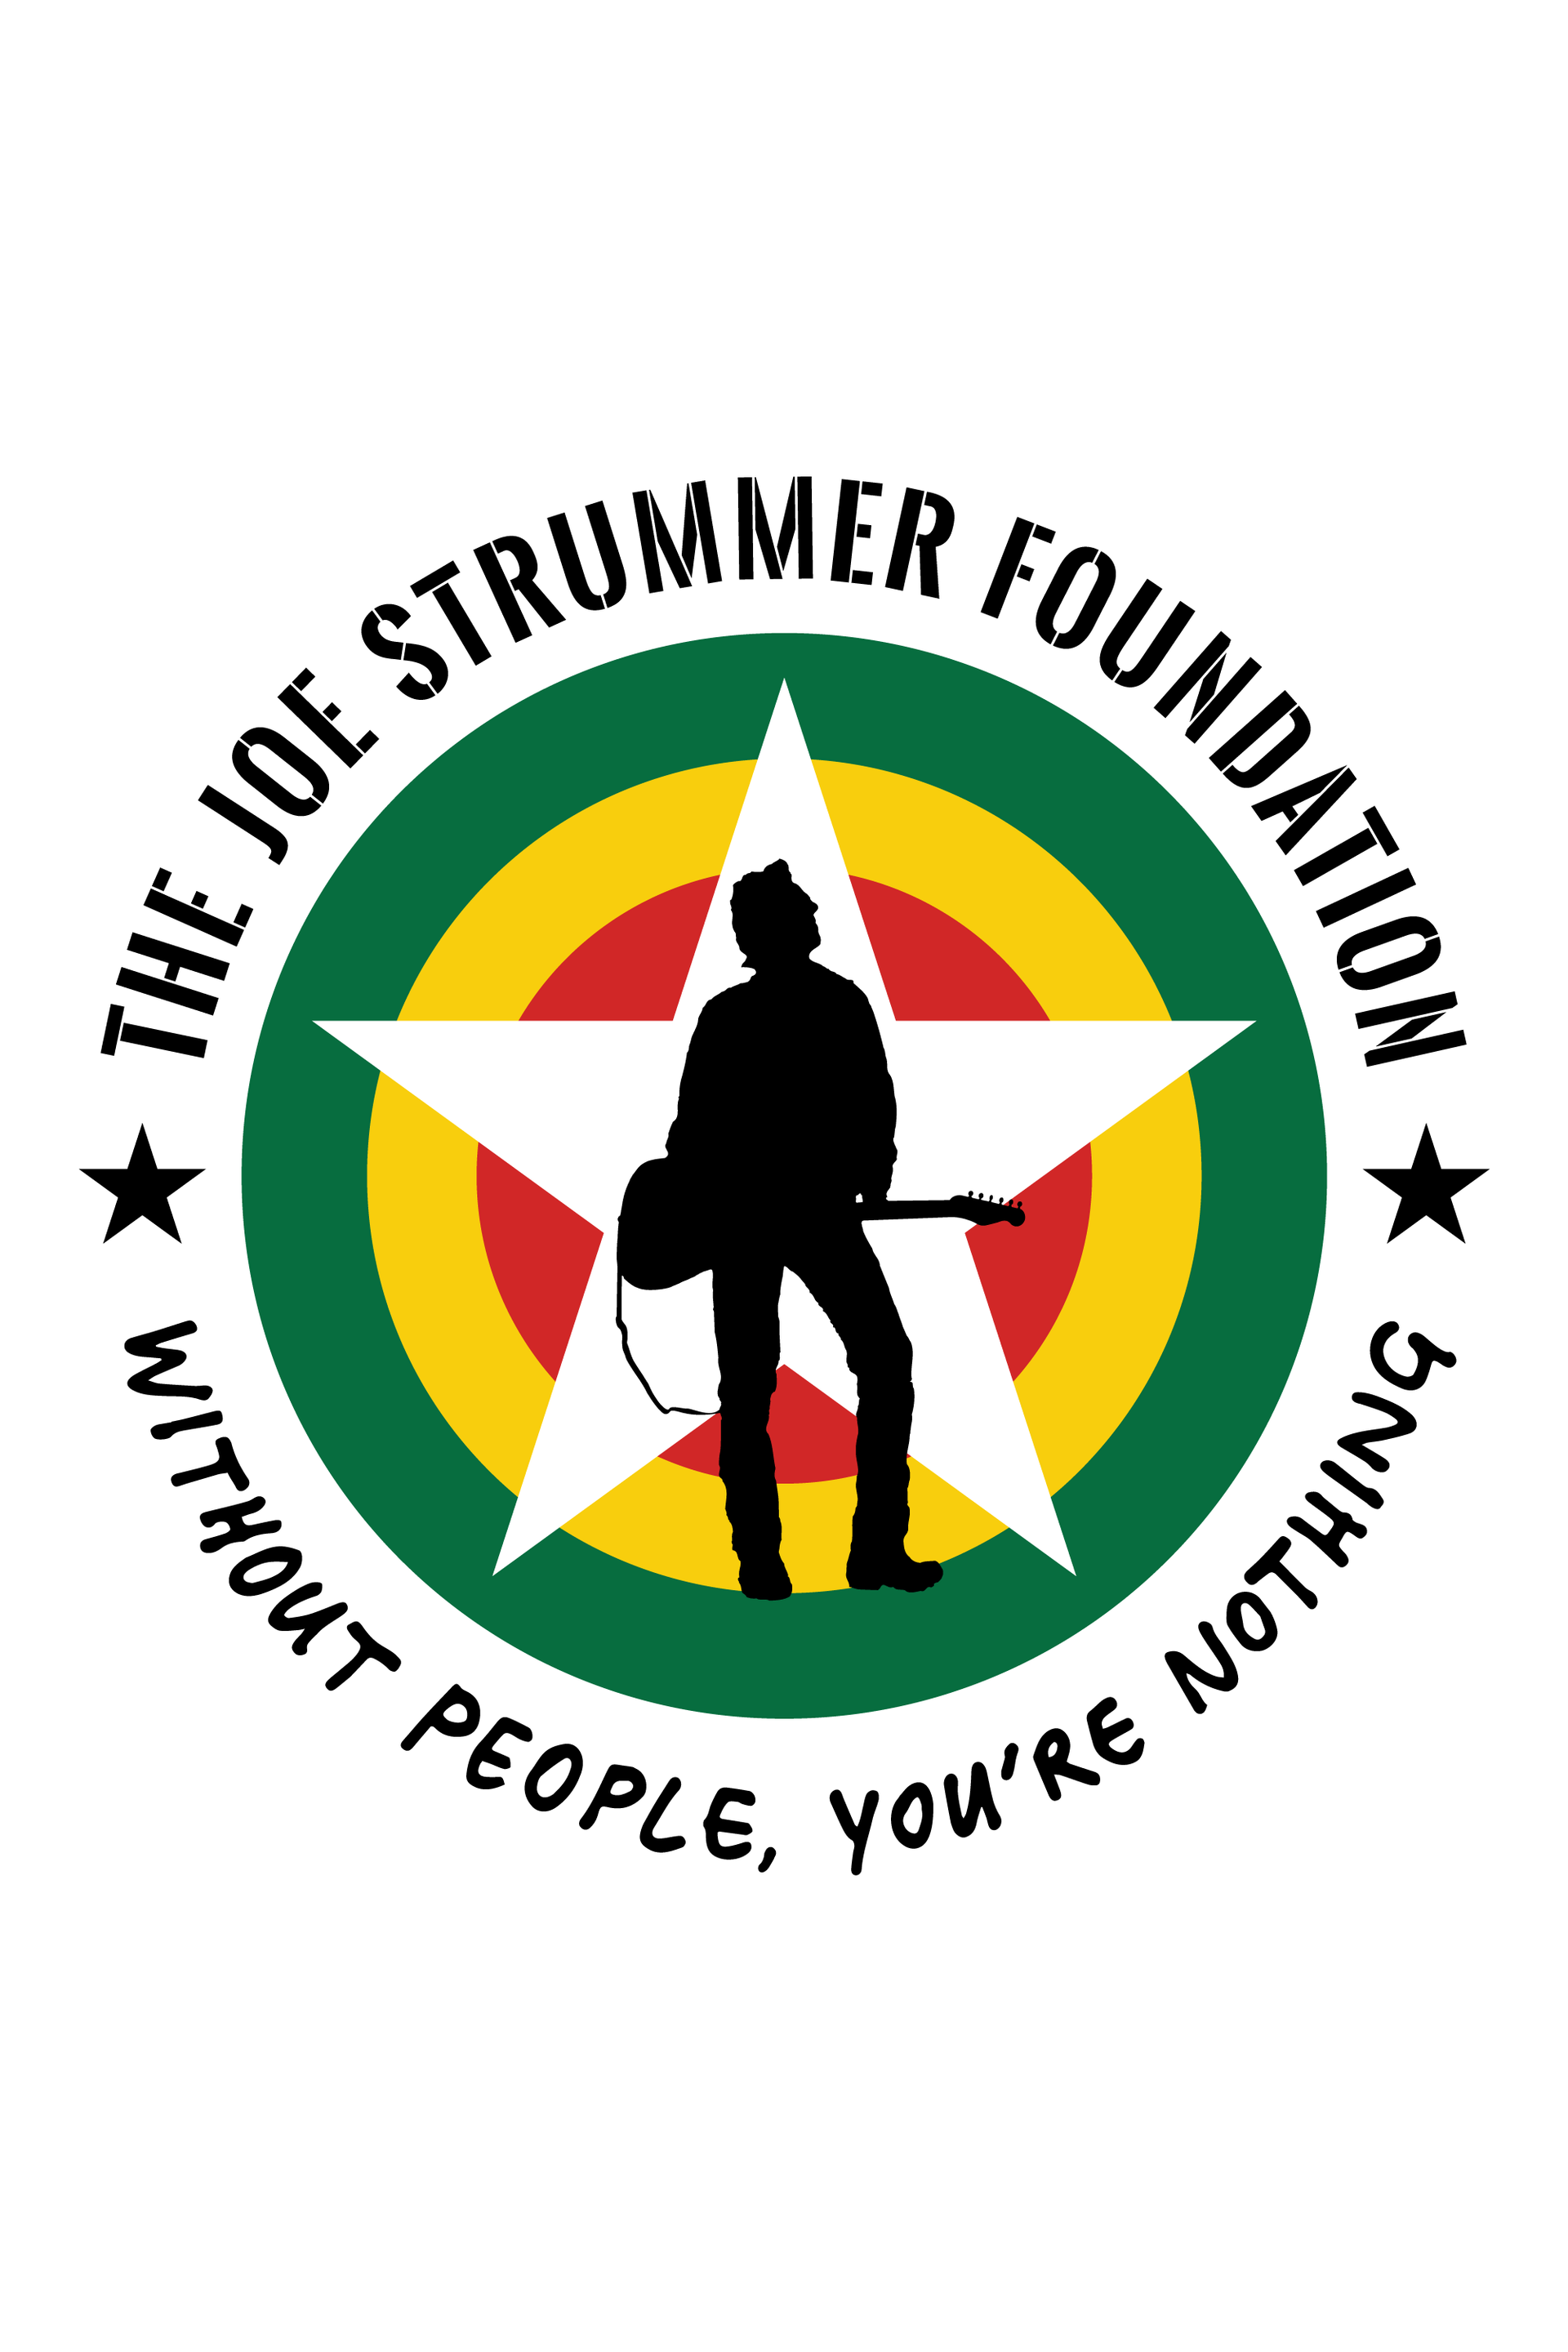 Joe Strummer Foundation logo